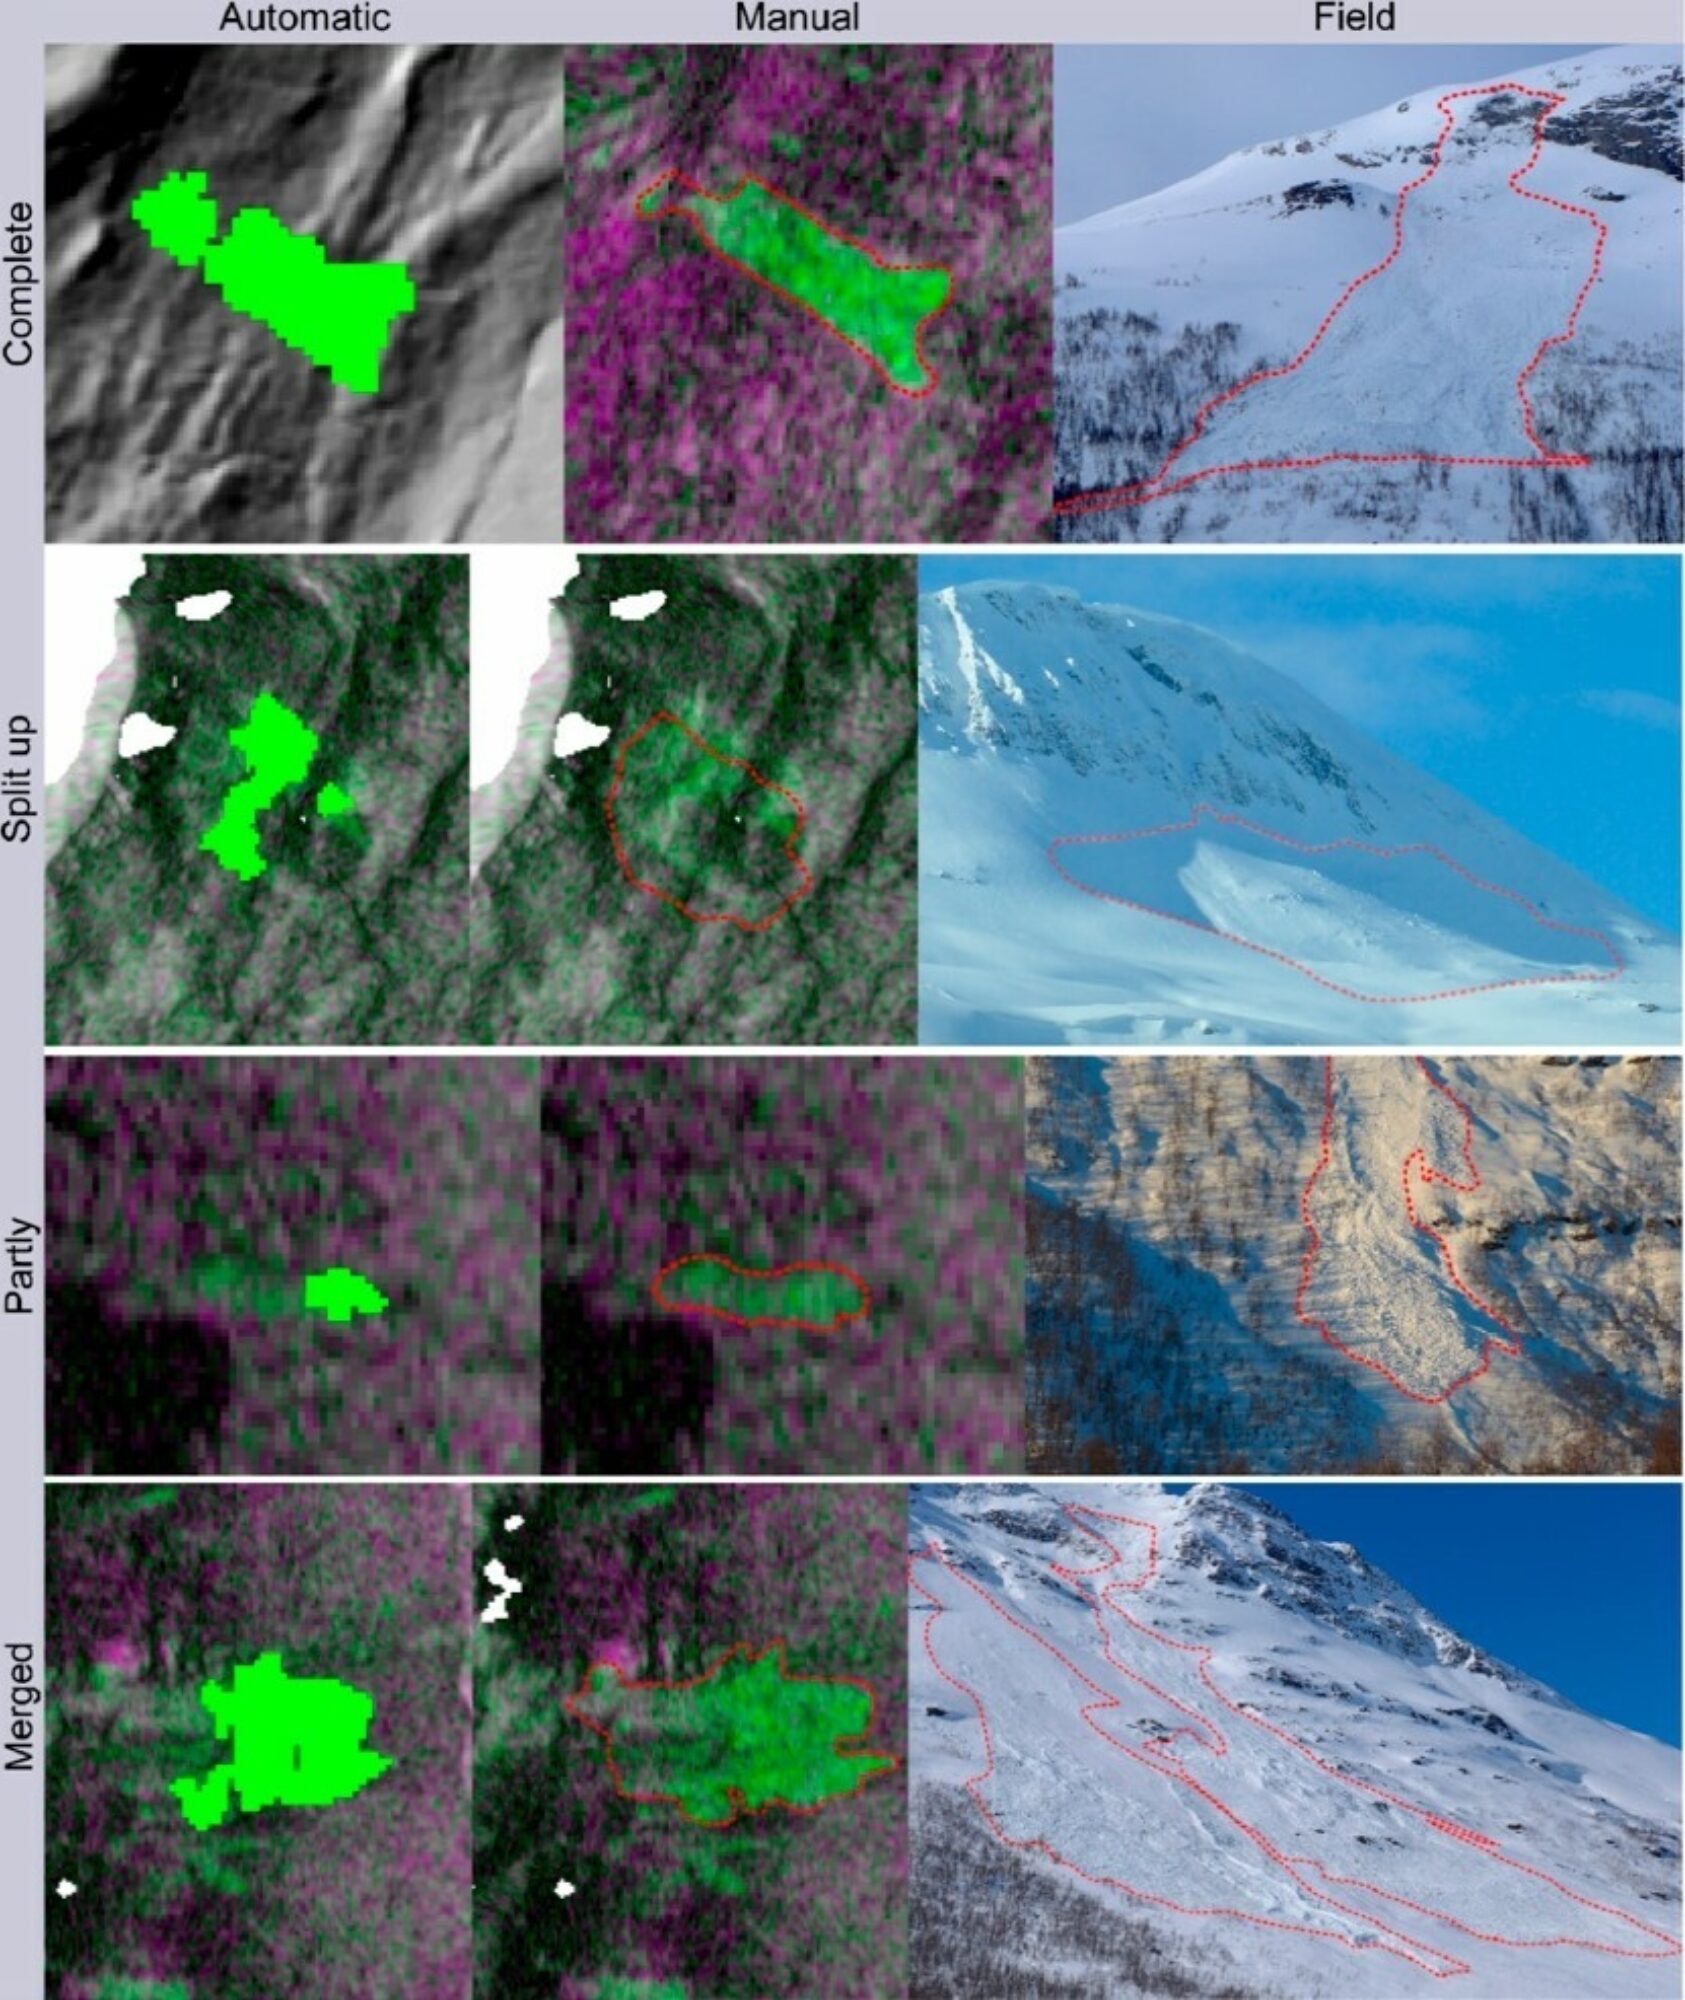 , Resulter av snøskreddeteksjon veg bruk av maskinlæring basert på SAR bilder (automatisk deteksjon), sammenlignet med manual deteksjon og feltbilder., Figure4, , 